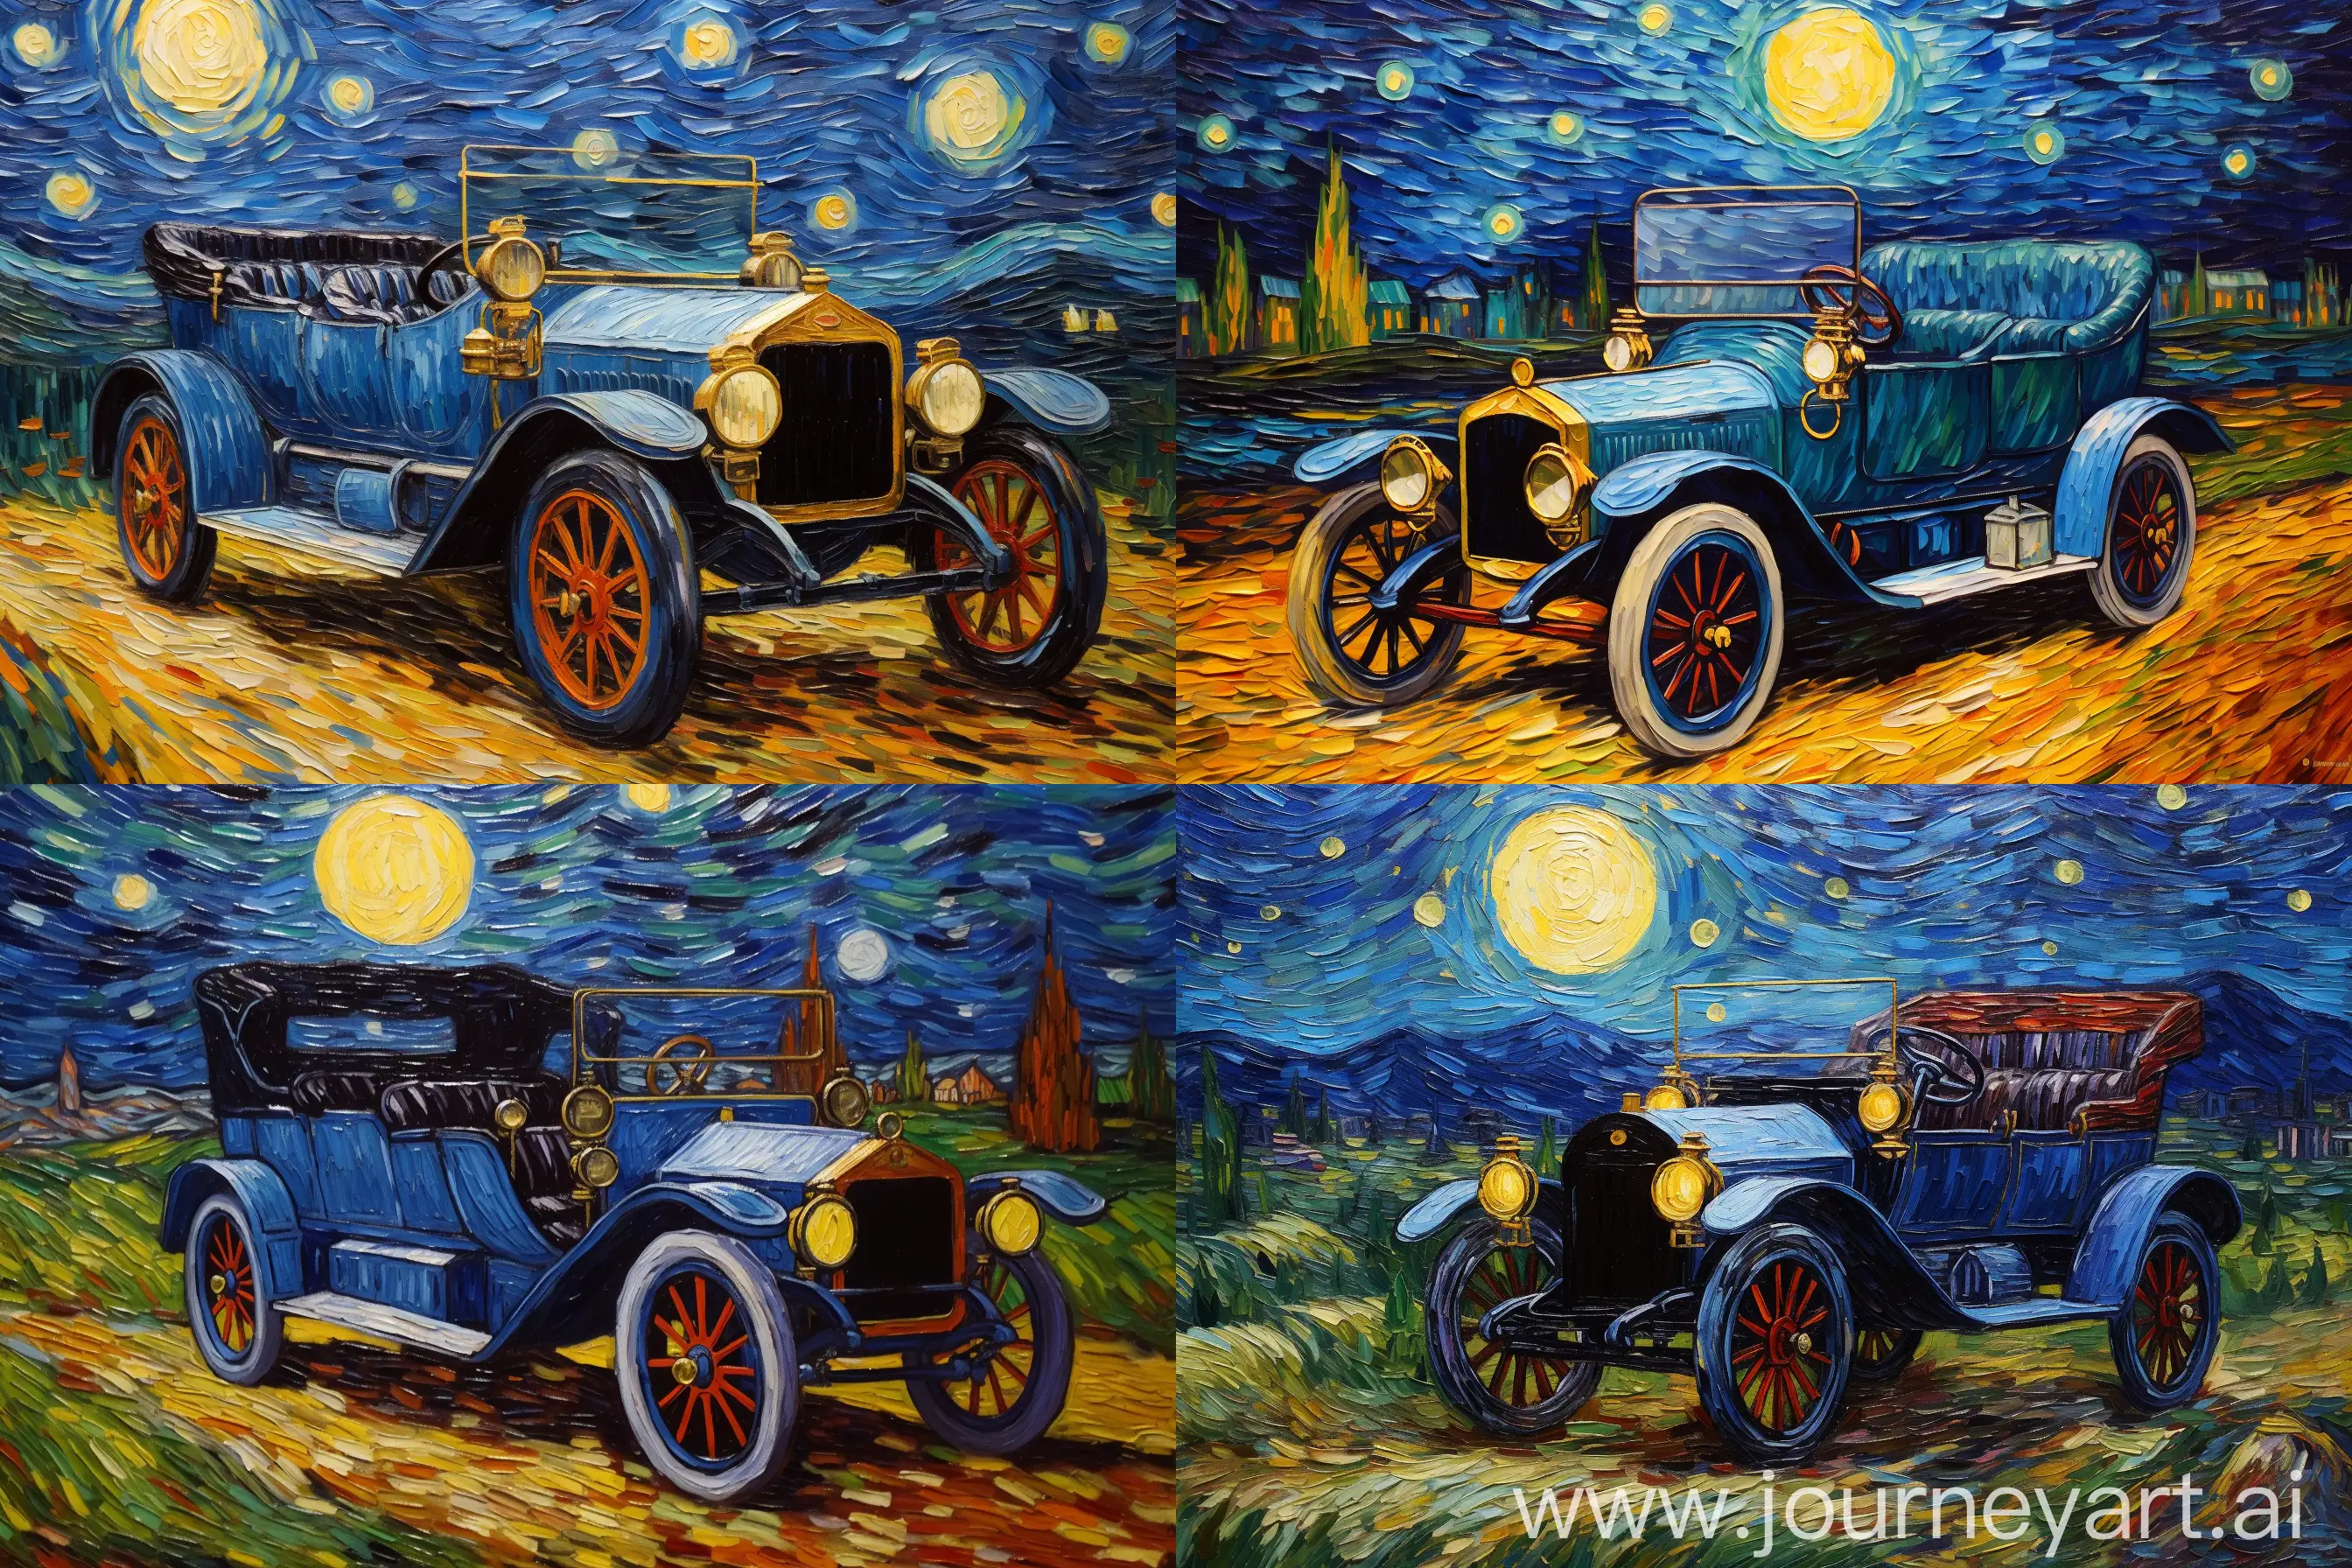 Vintage-Car-Painting-in-Van-Gogh-Style